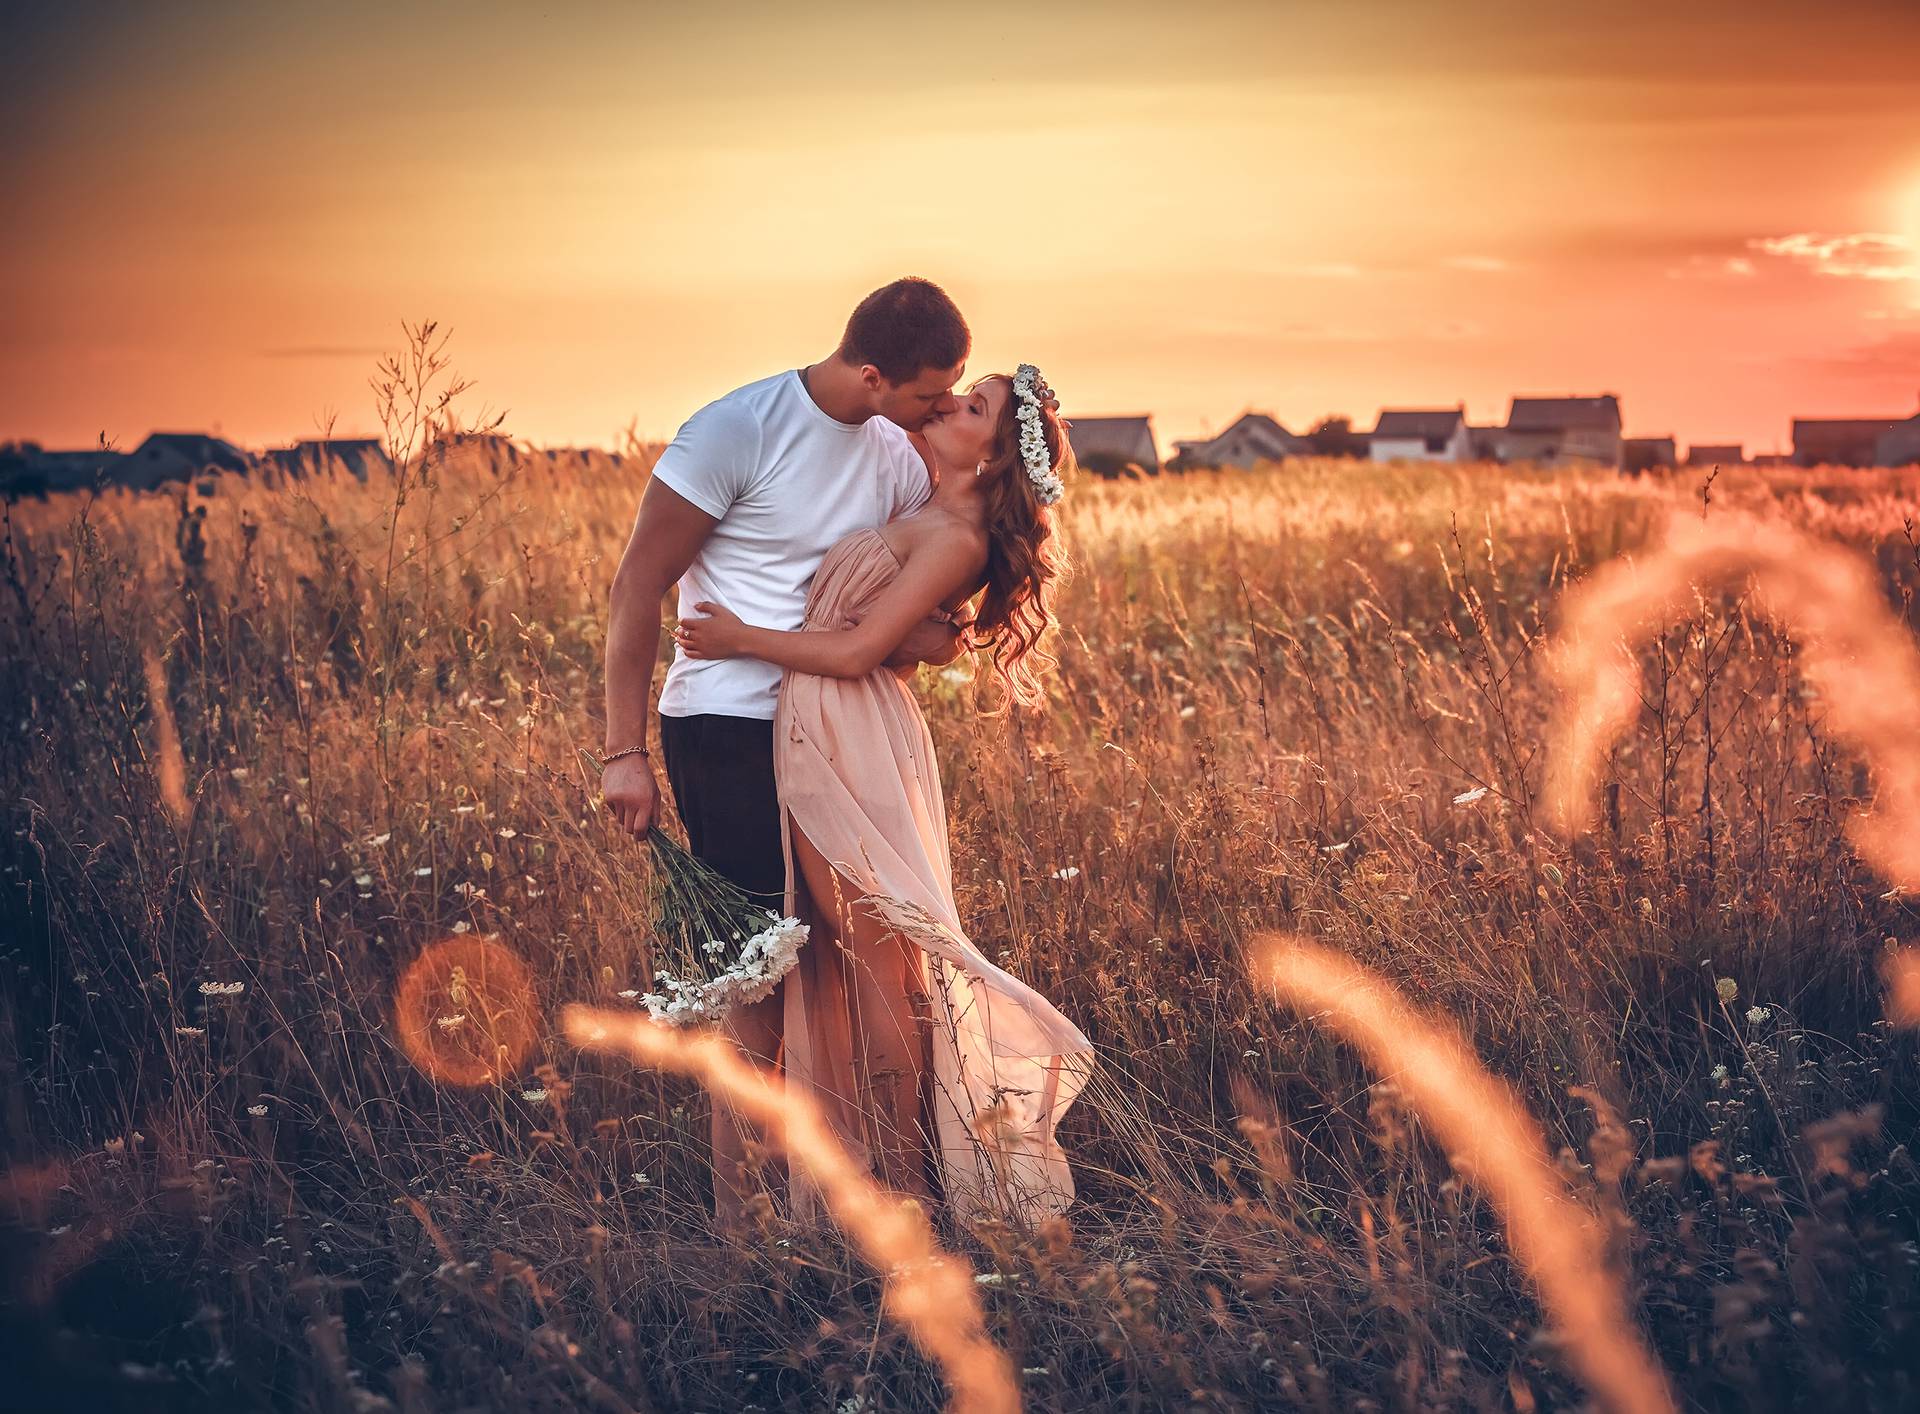 20 oženjenih muškaraca otkrilo je svoje savjete za sretan brak